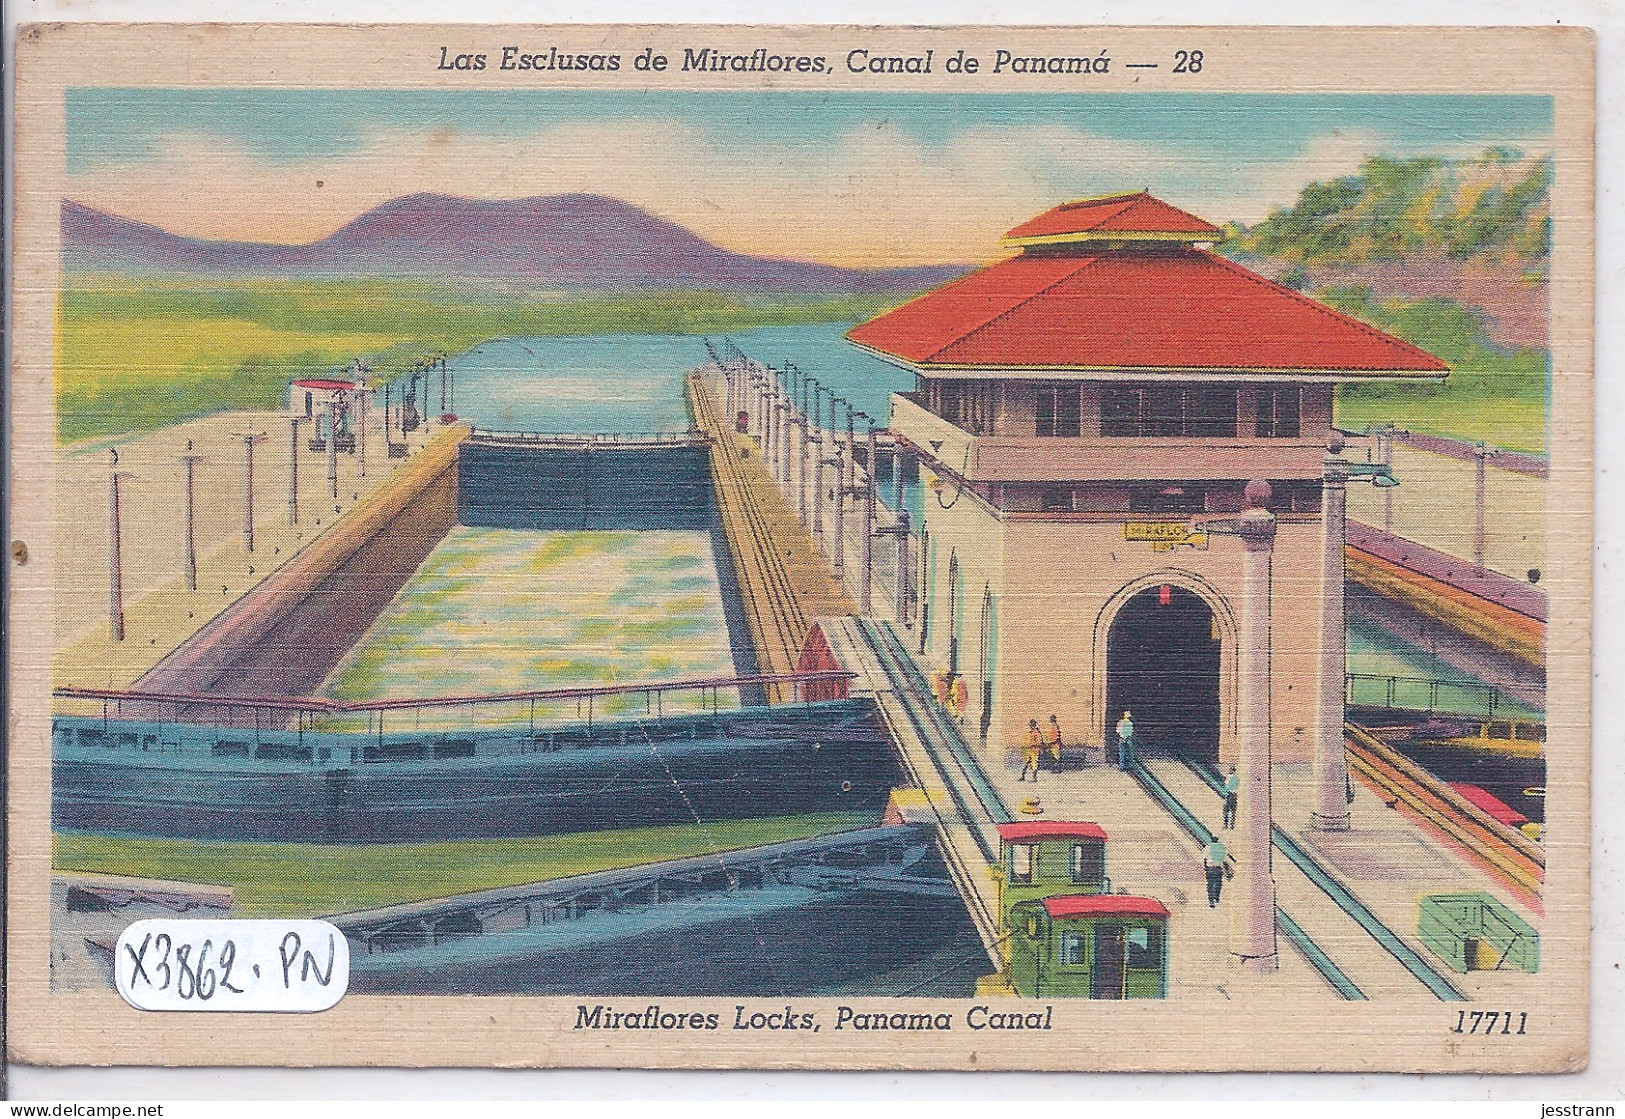 PANAMA- LAS ECLUSAS DE MIRAFLORES- CANAL DE PANAMA- - Panama